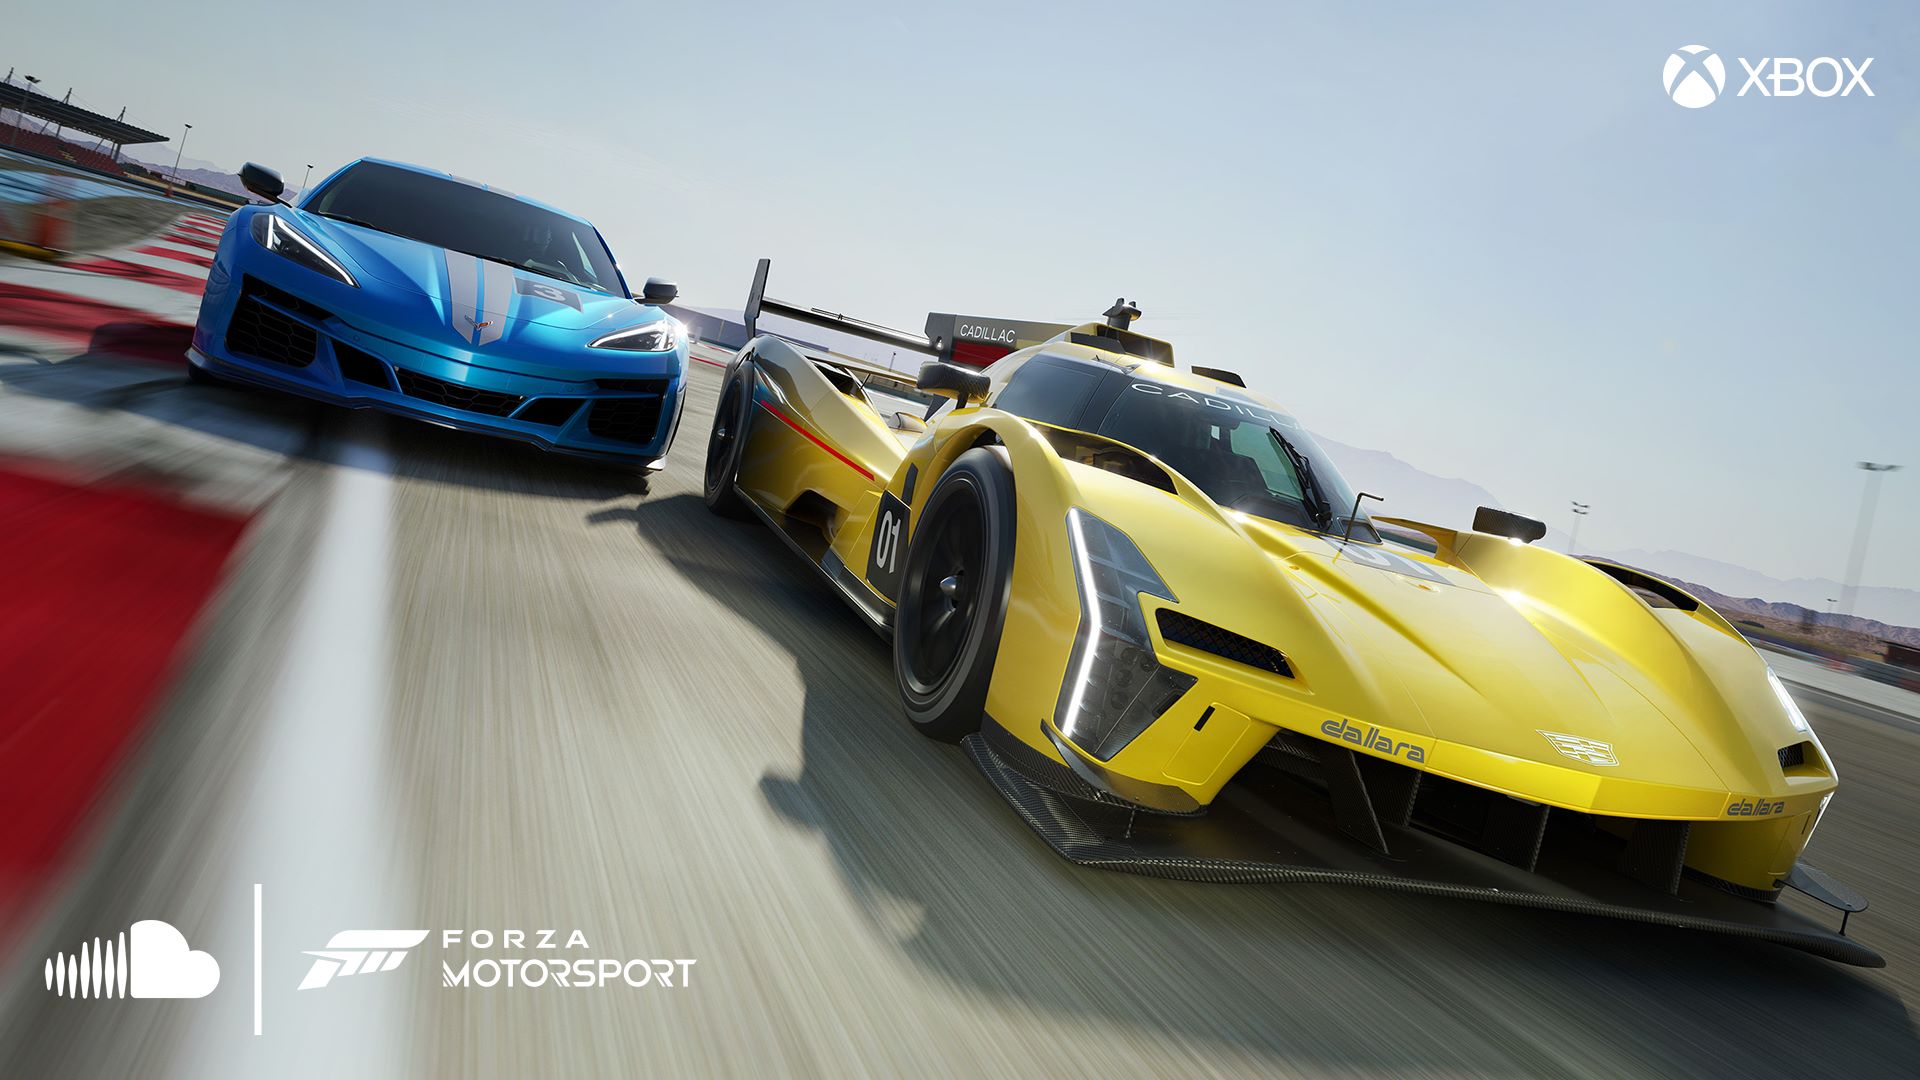 Forza Motorsport 7 - Xbox One, Xbox One